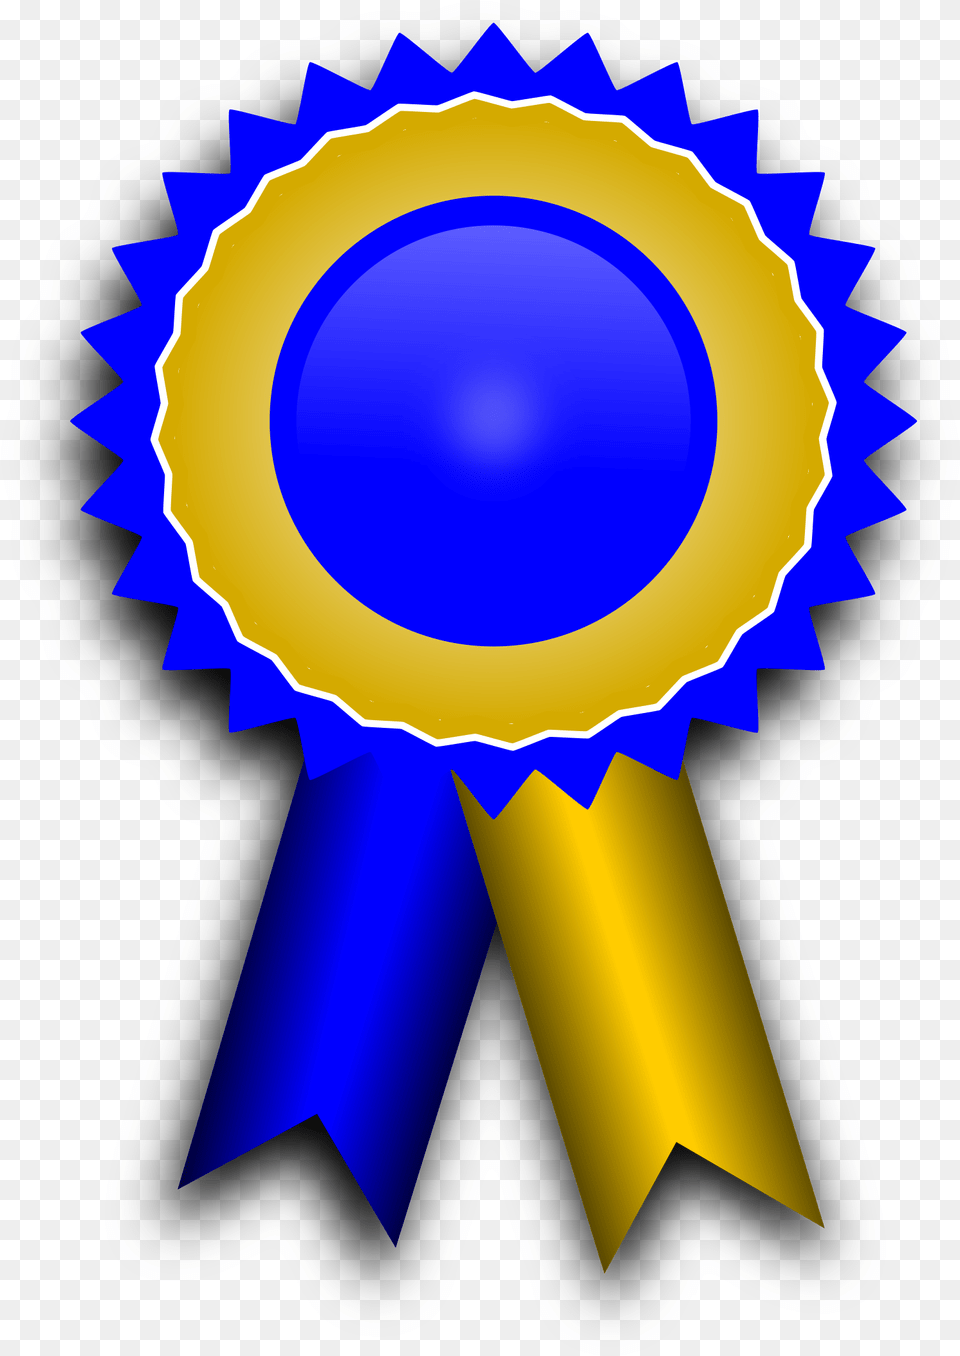 Award Ribbon Clipart Award Ribbon Blue And Yellow, Gold, Badge, Logo, Symbol Png